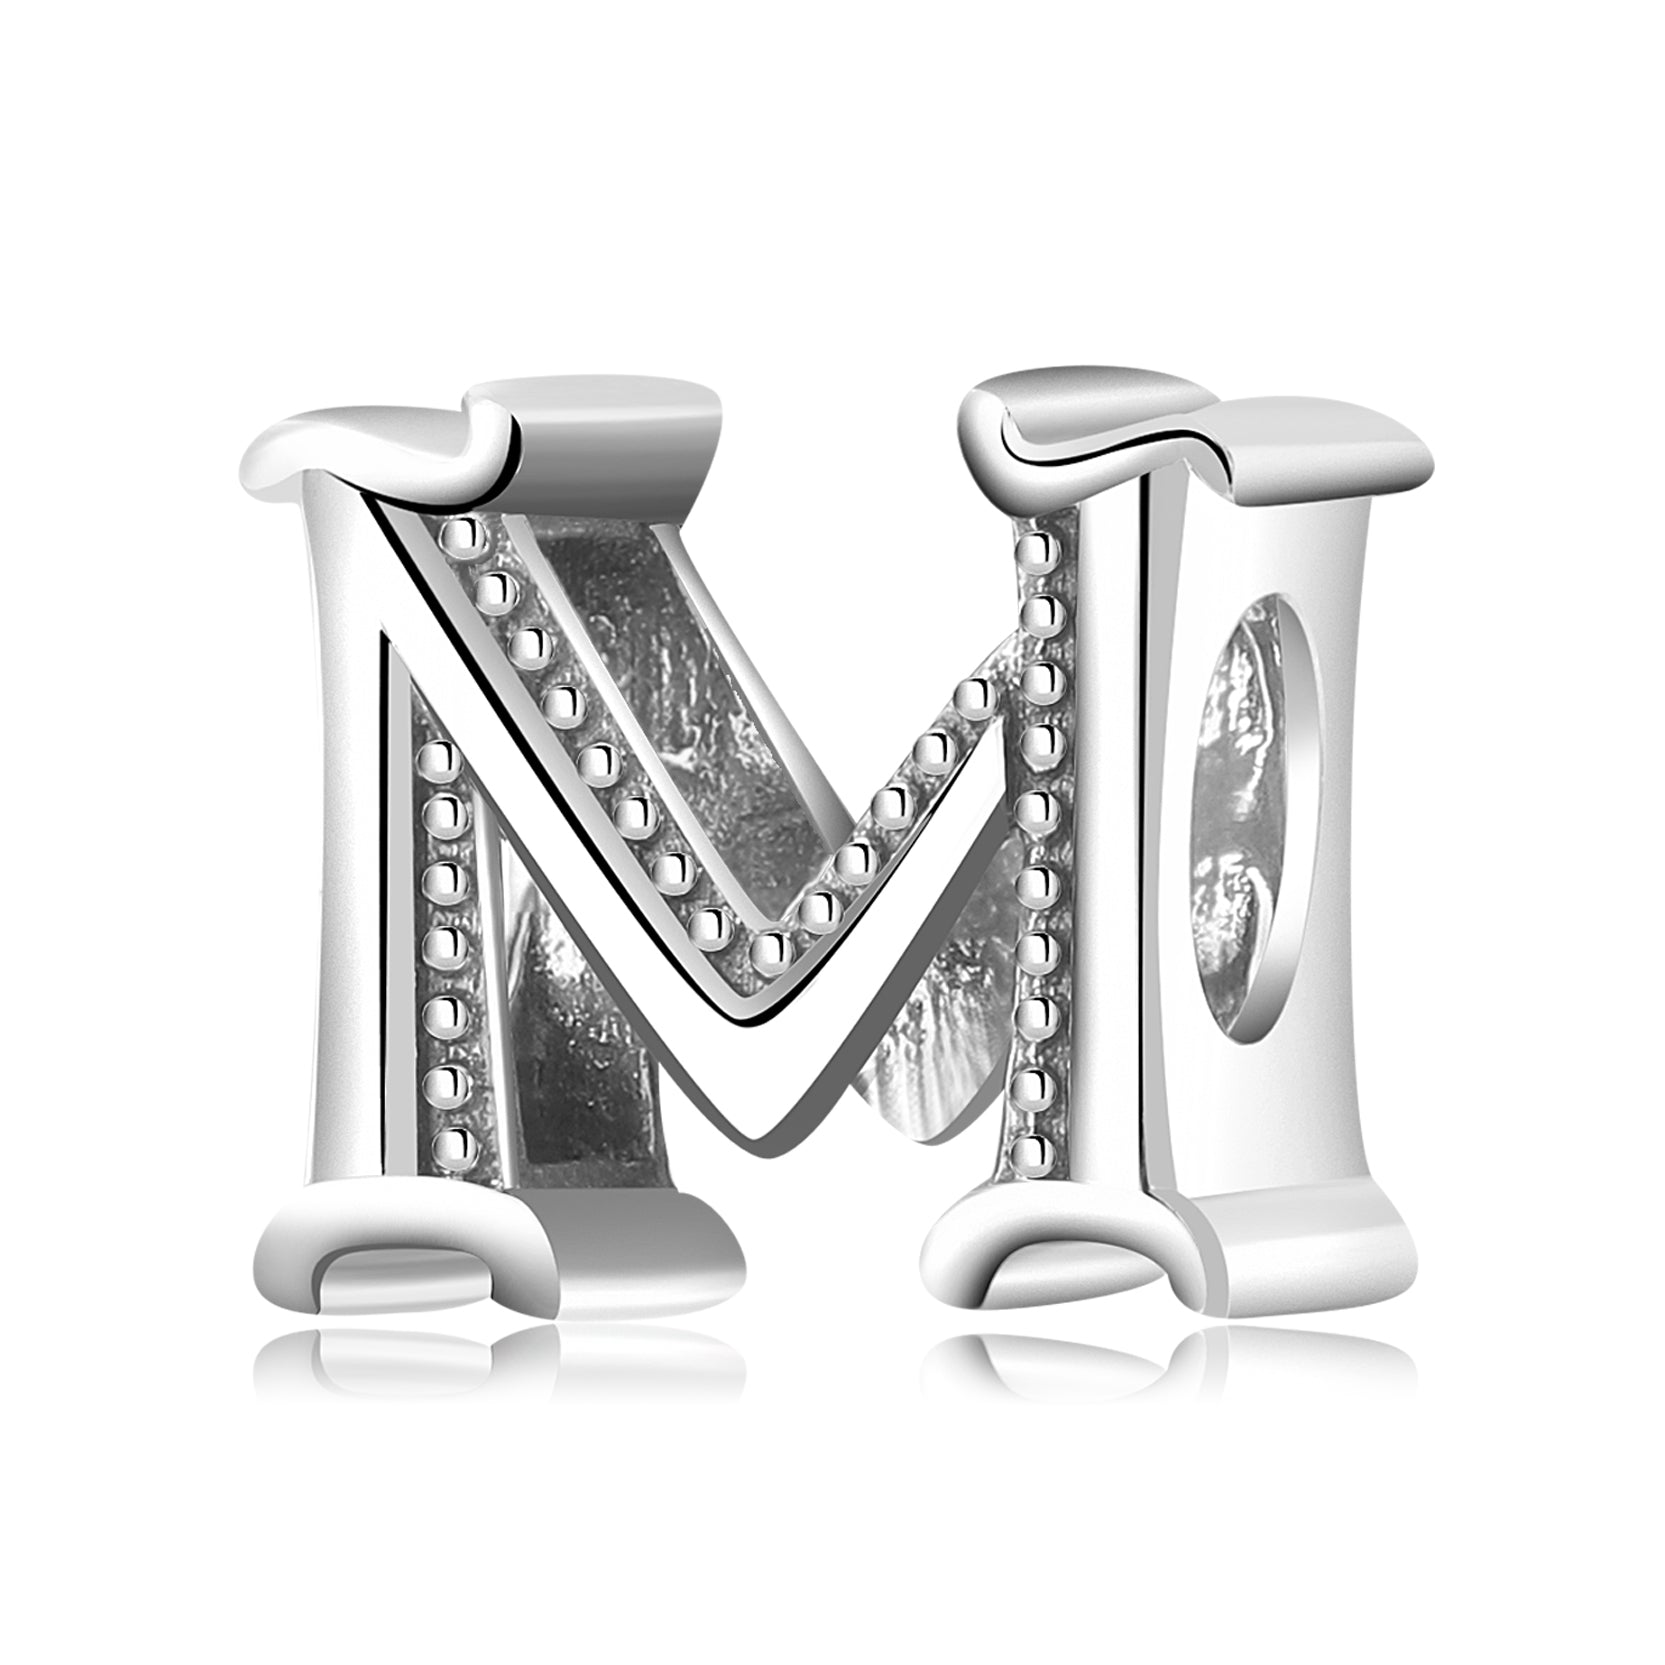 Letter "M" - pendant for names